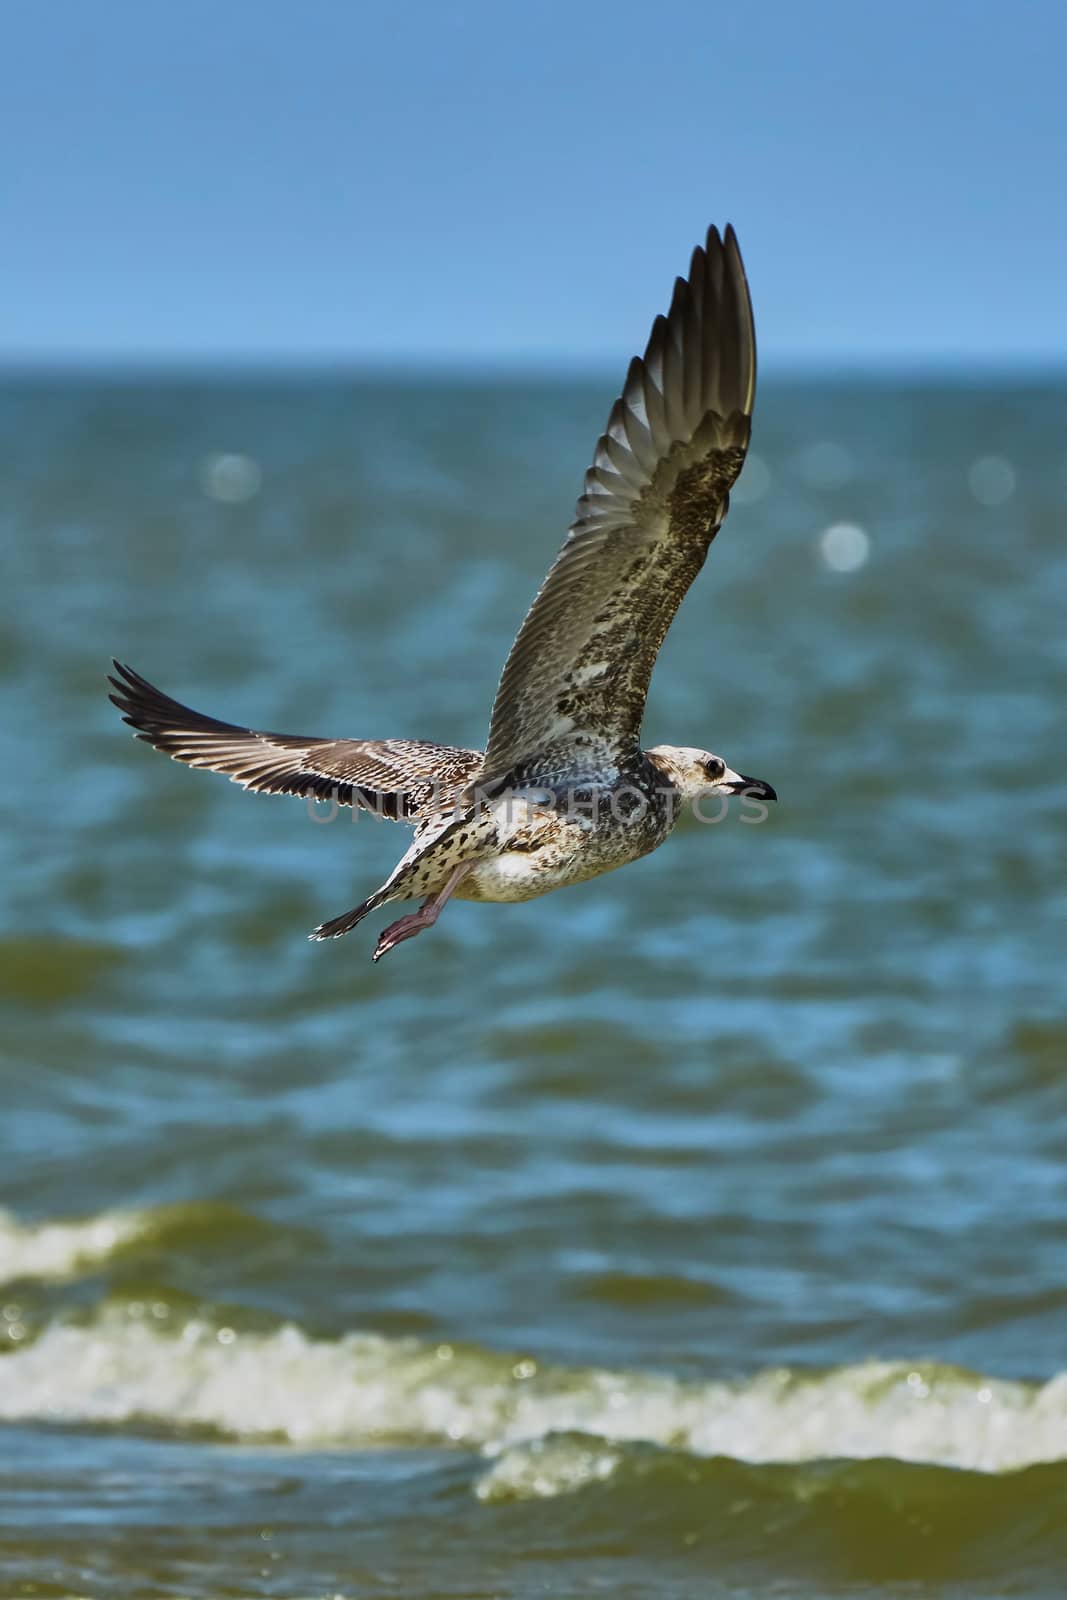  Common gull in flight over the sea                                                             